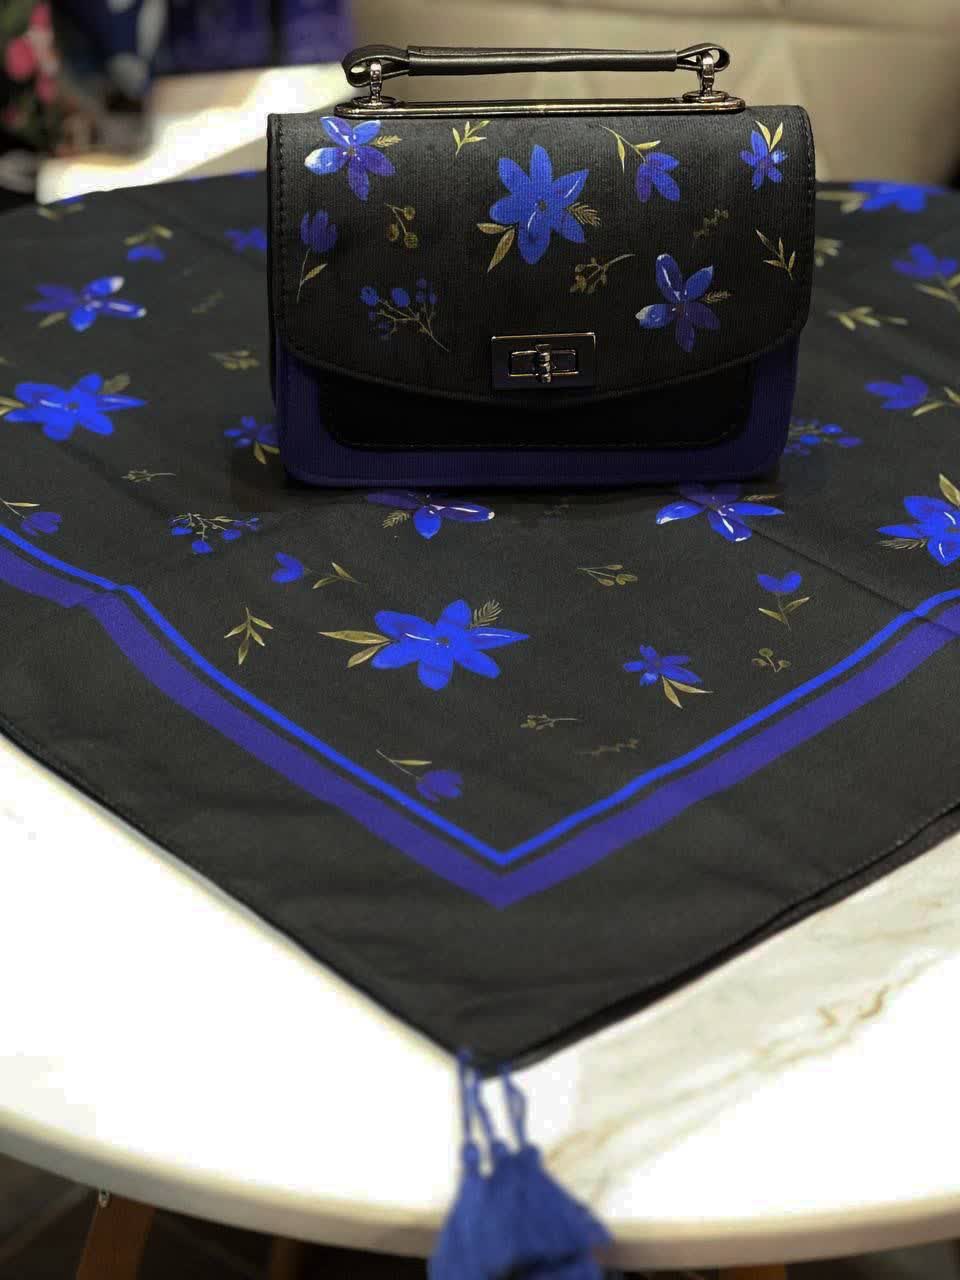 ست کیف و روسری زنانه طرح فلاور رنگ مشکی با گل های آبی با کیف دسته چرمی کیفیت عالی با ارسال رایگان کد mo411